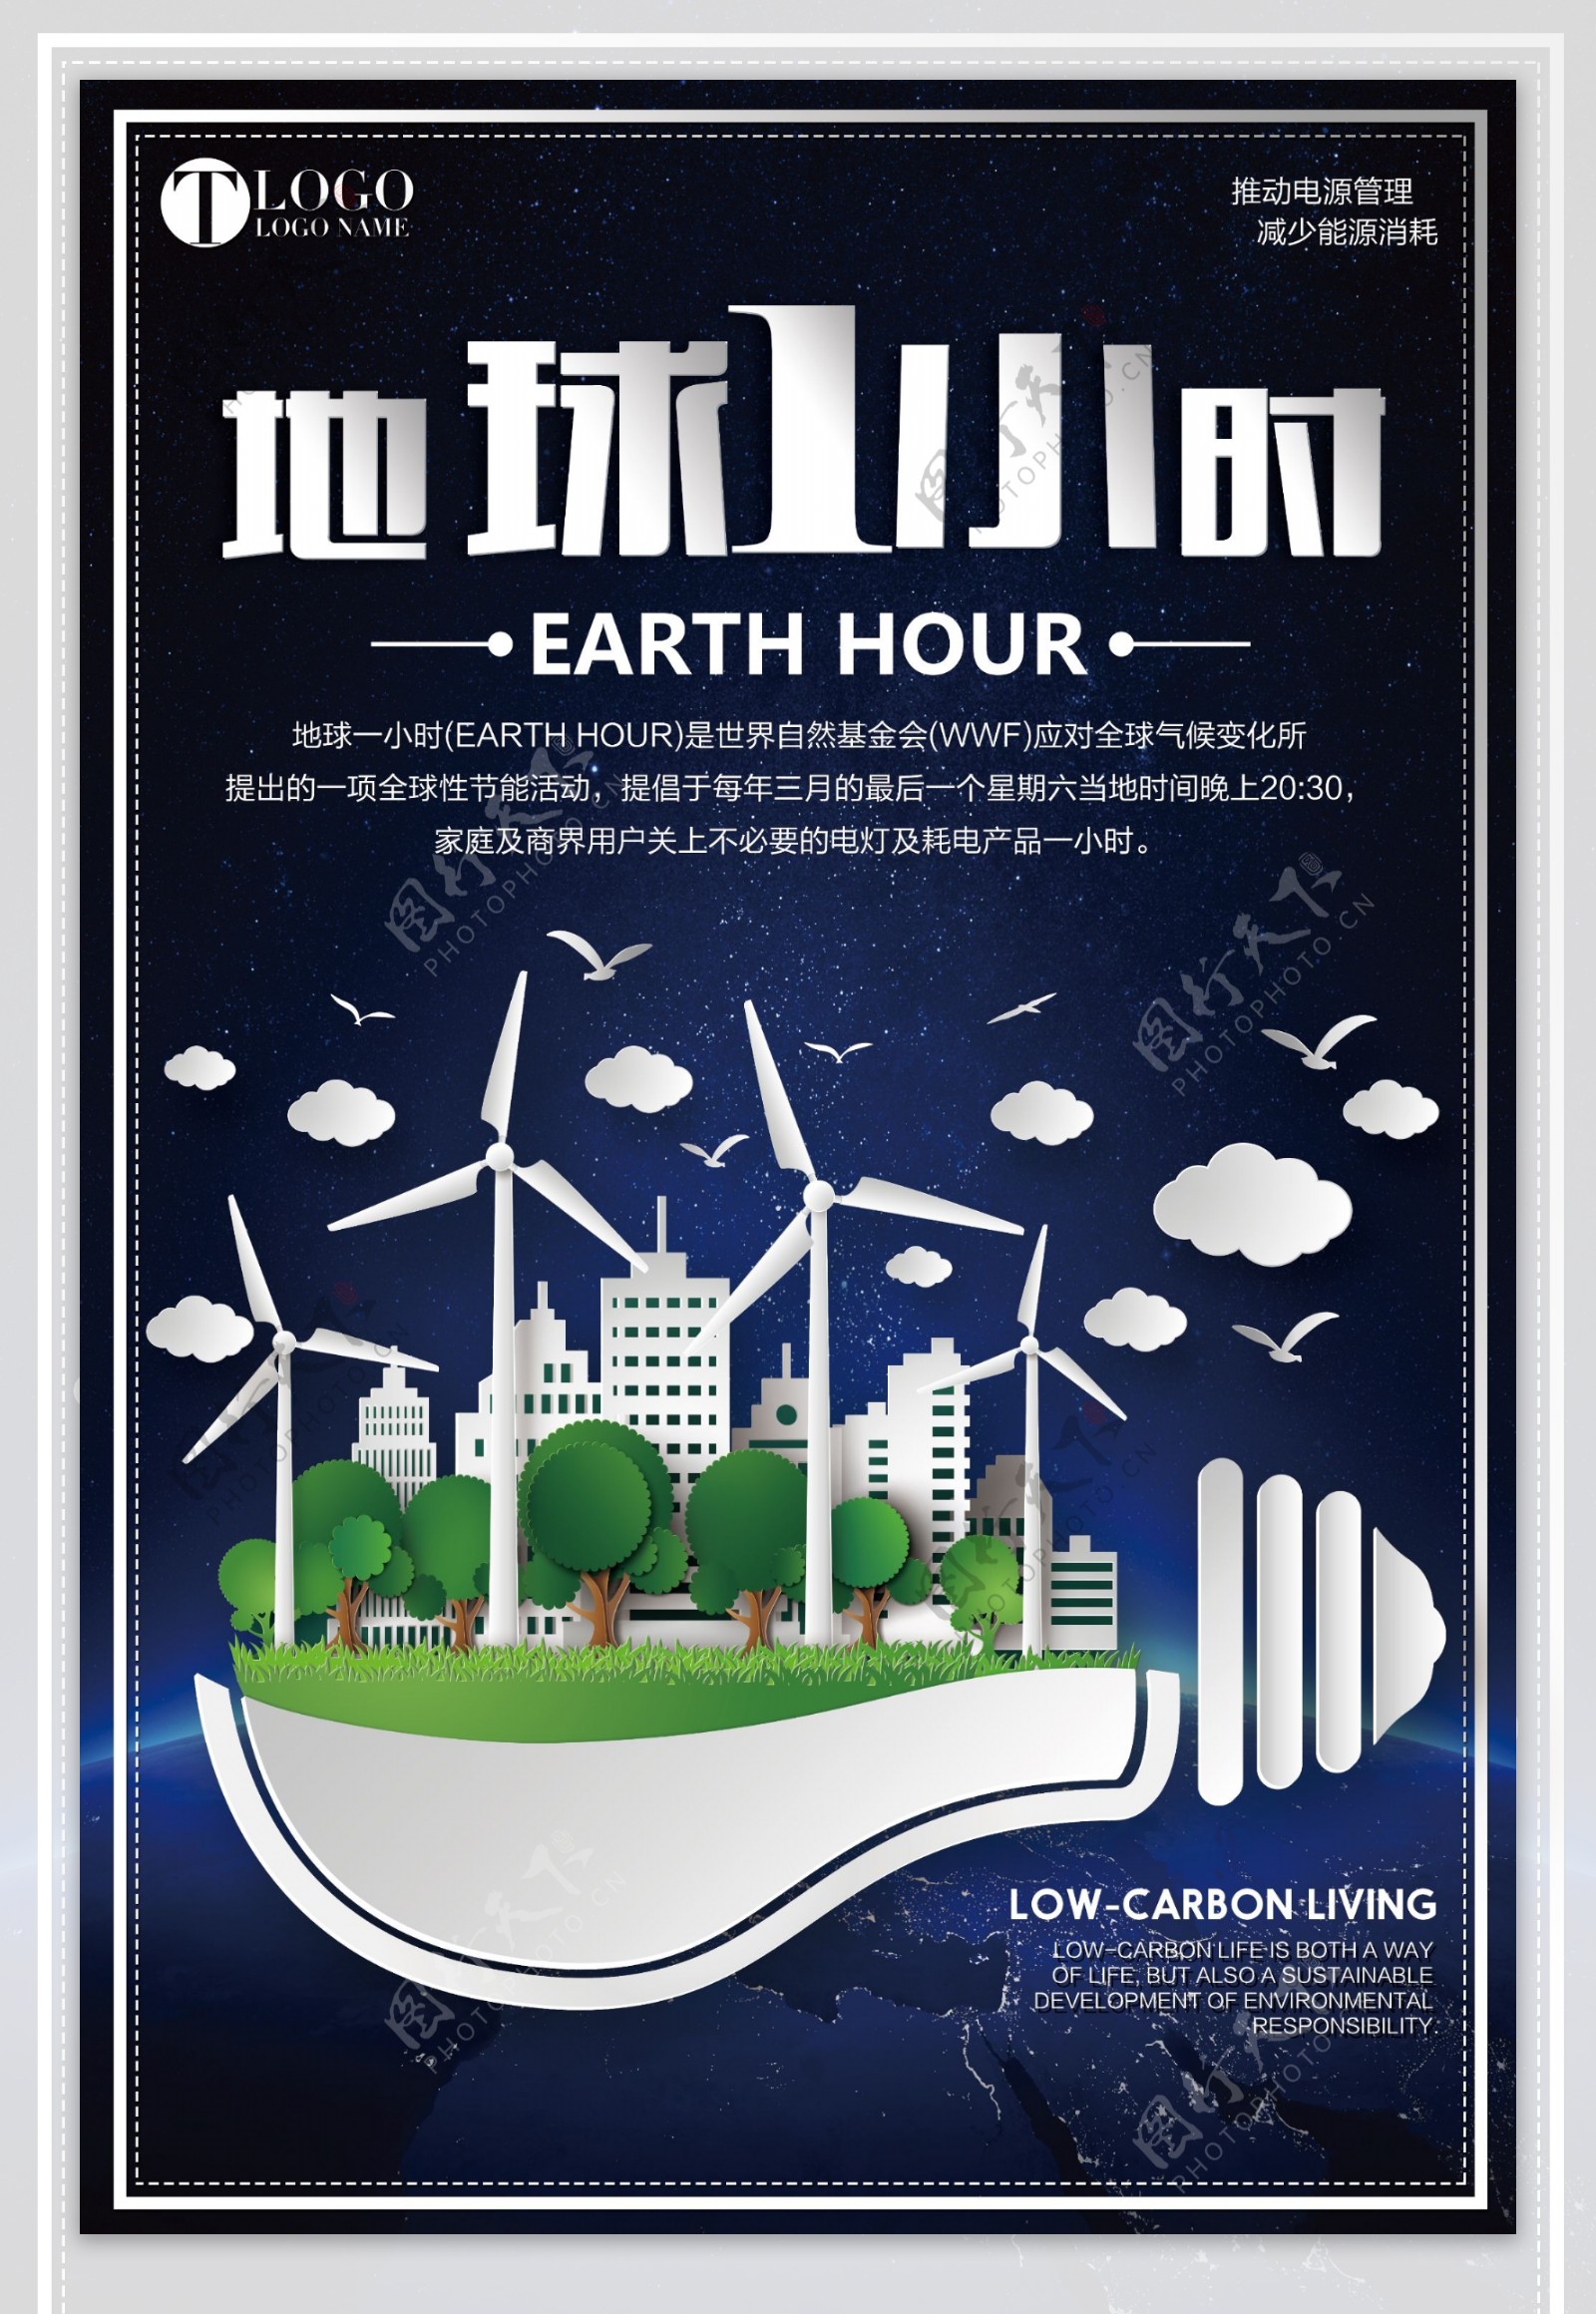 2018蓝色创意地球一小时公益宣传海报